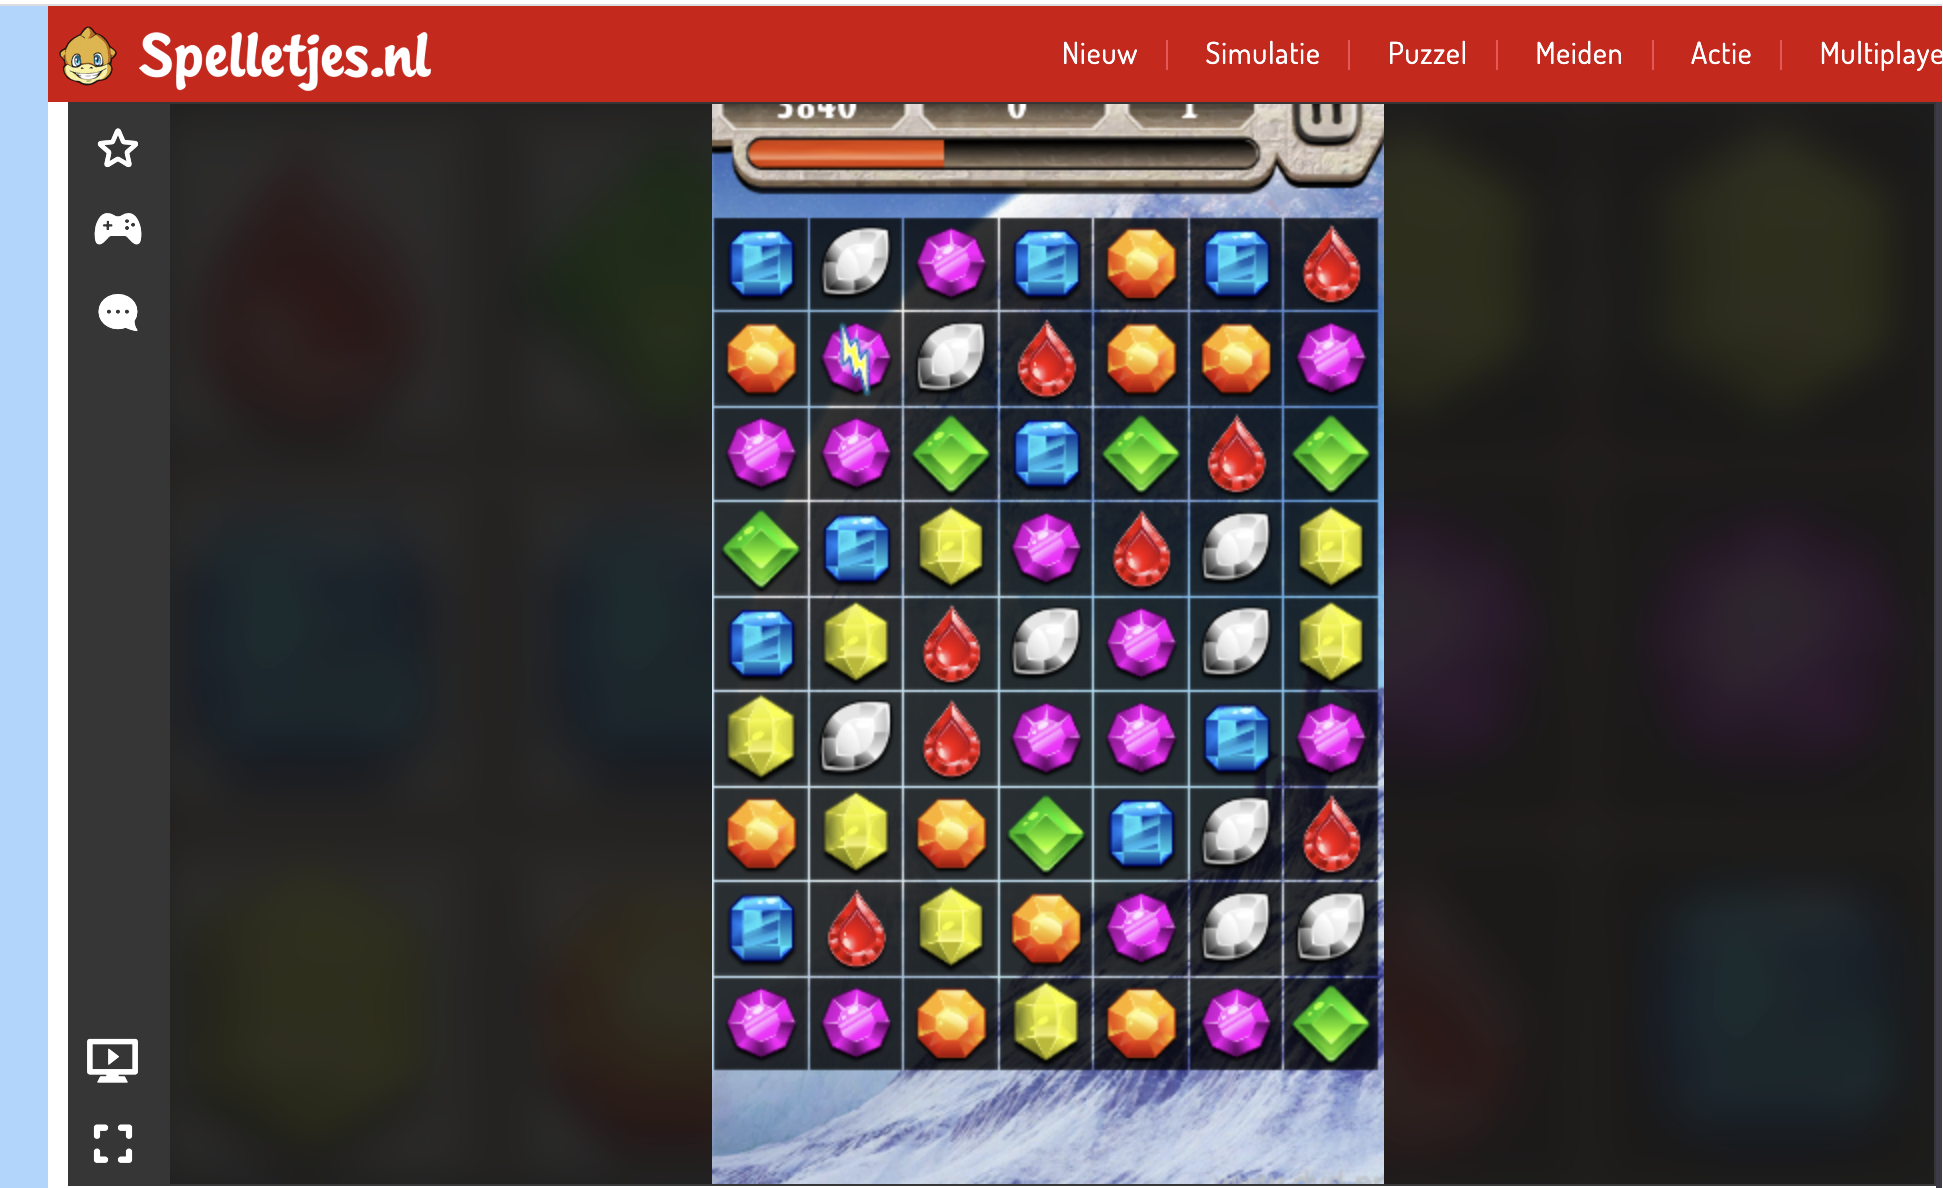 Spelbord van het spel Juwelenmatch, waar je dezelfde edelstenen met elkaar moet matchen